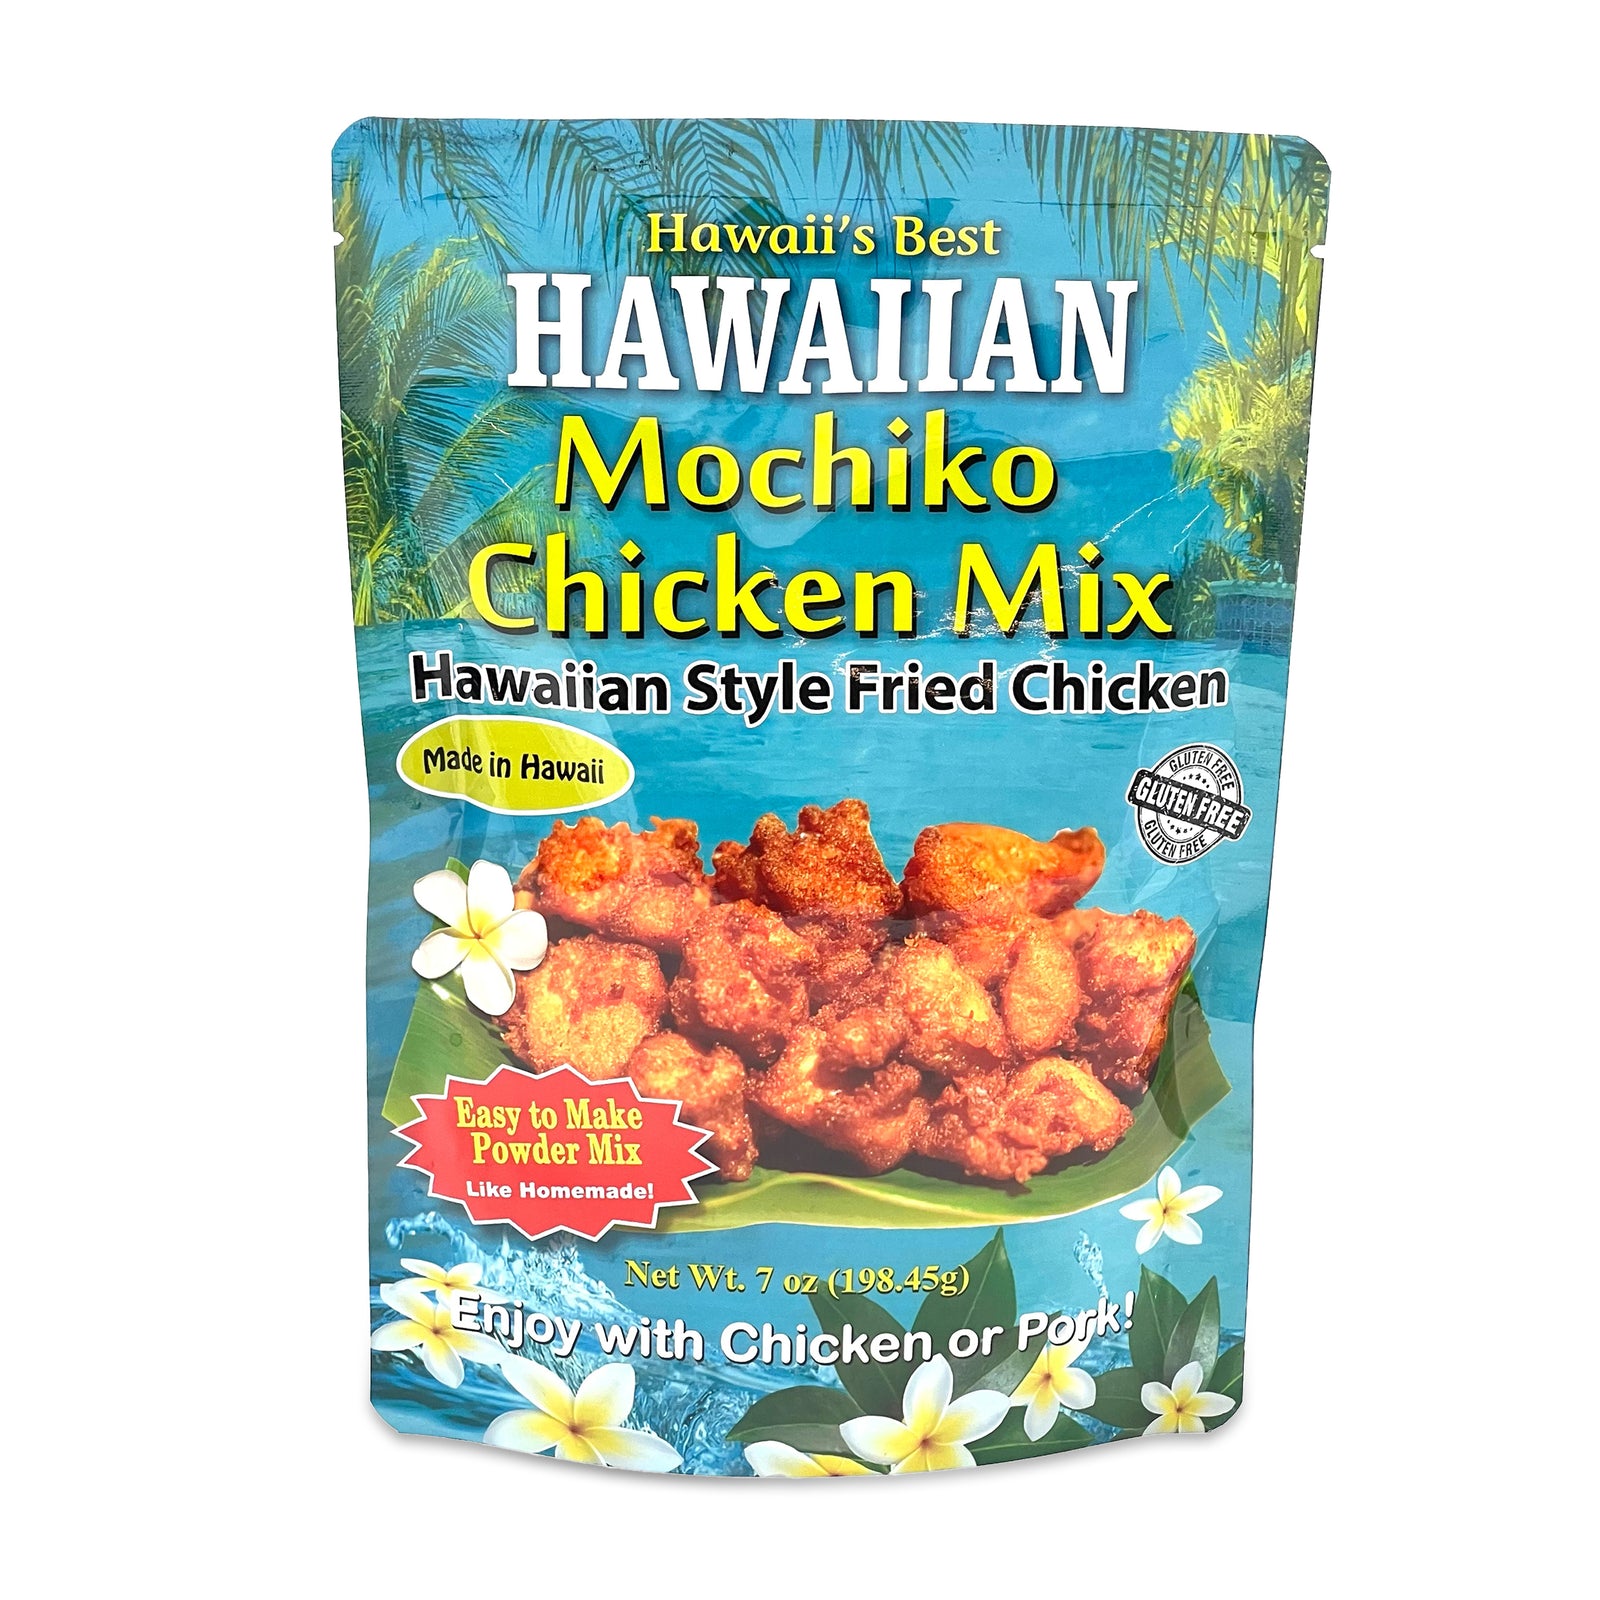 Pop-Up Mākeke - Hawaii's Best Mixes - Hawaiian Mochiko Chicken Mix - Front View